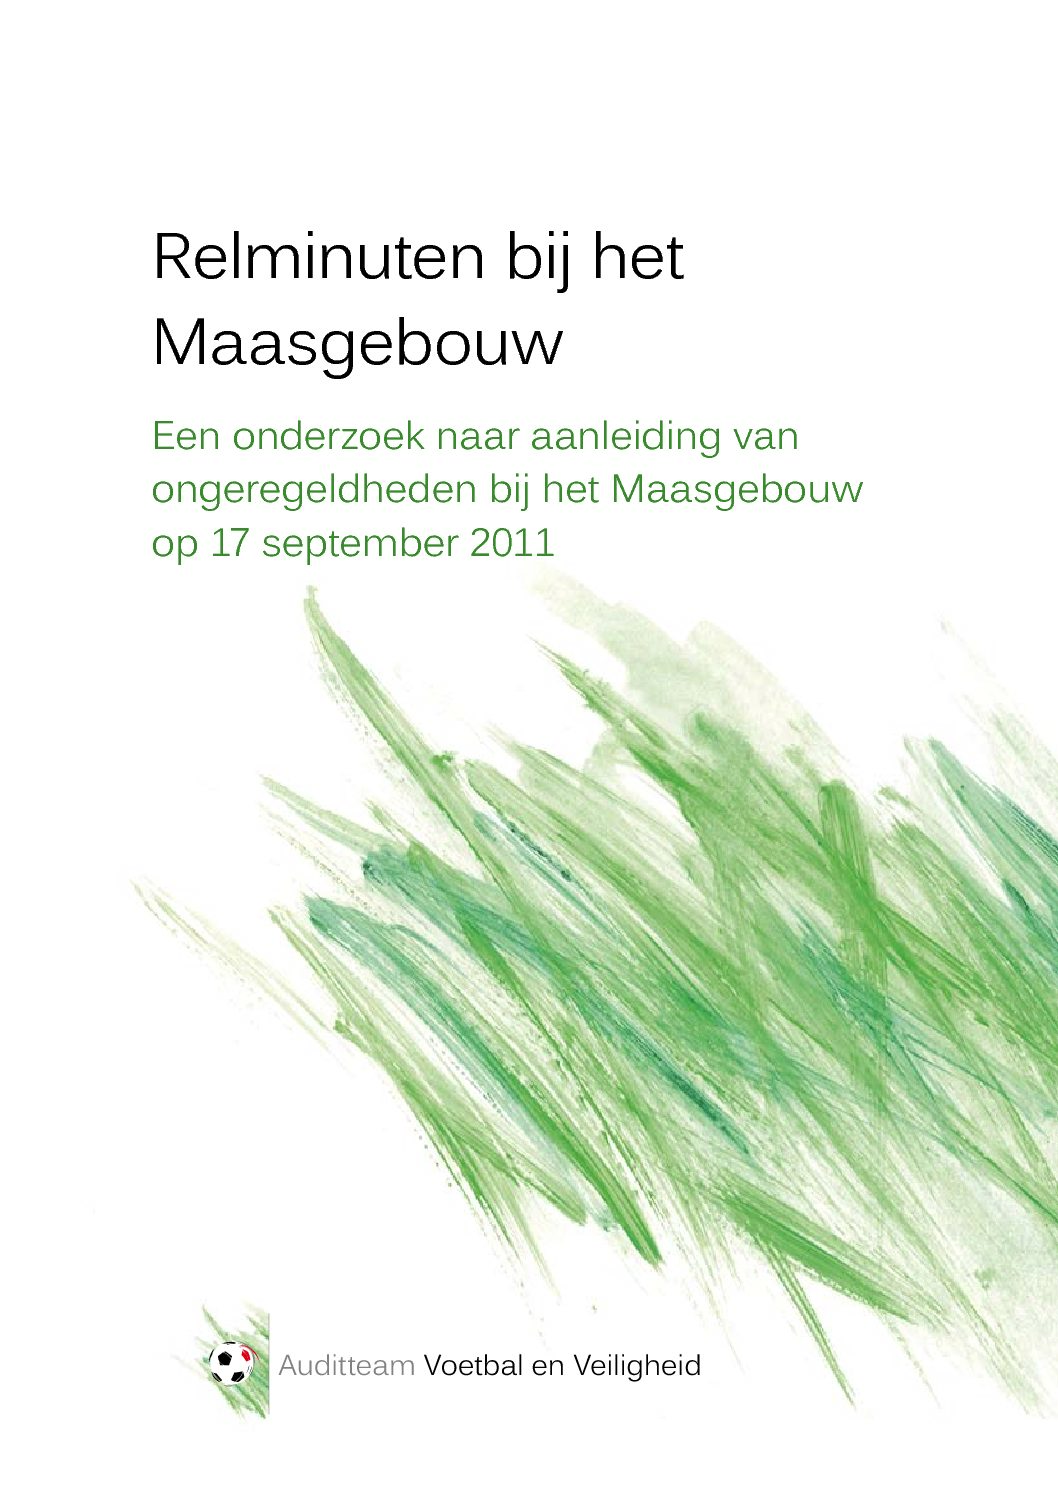 Relminuten bij het Maasgebouw: Een onderzoek naar aanleiding van ongeregeldheden bij het Maasgebouw op 17 september 2011, 2012.